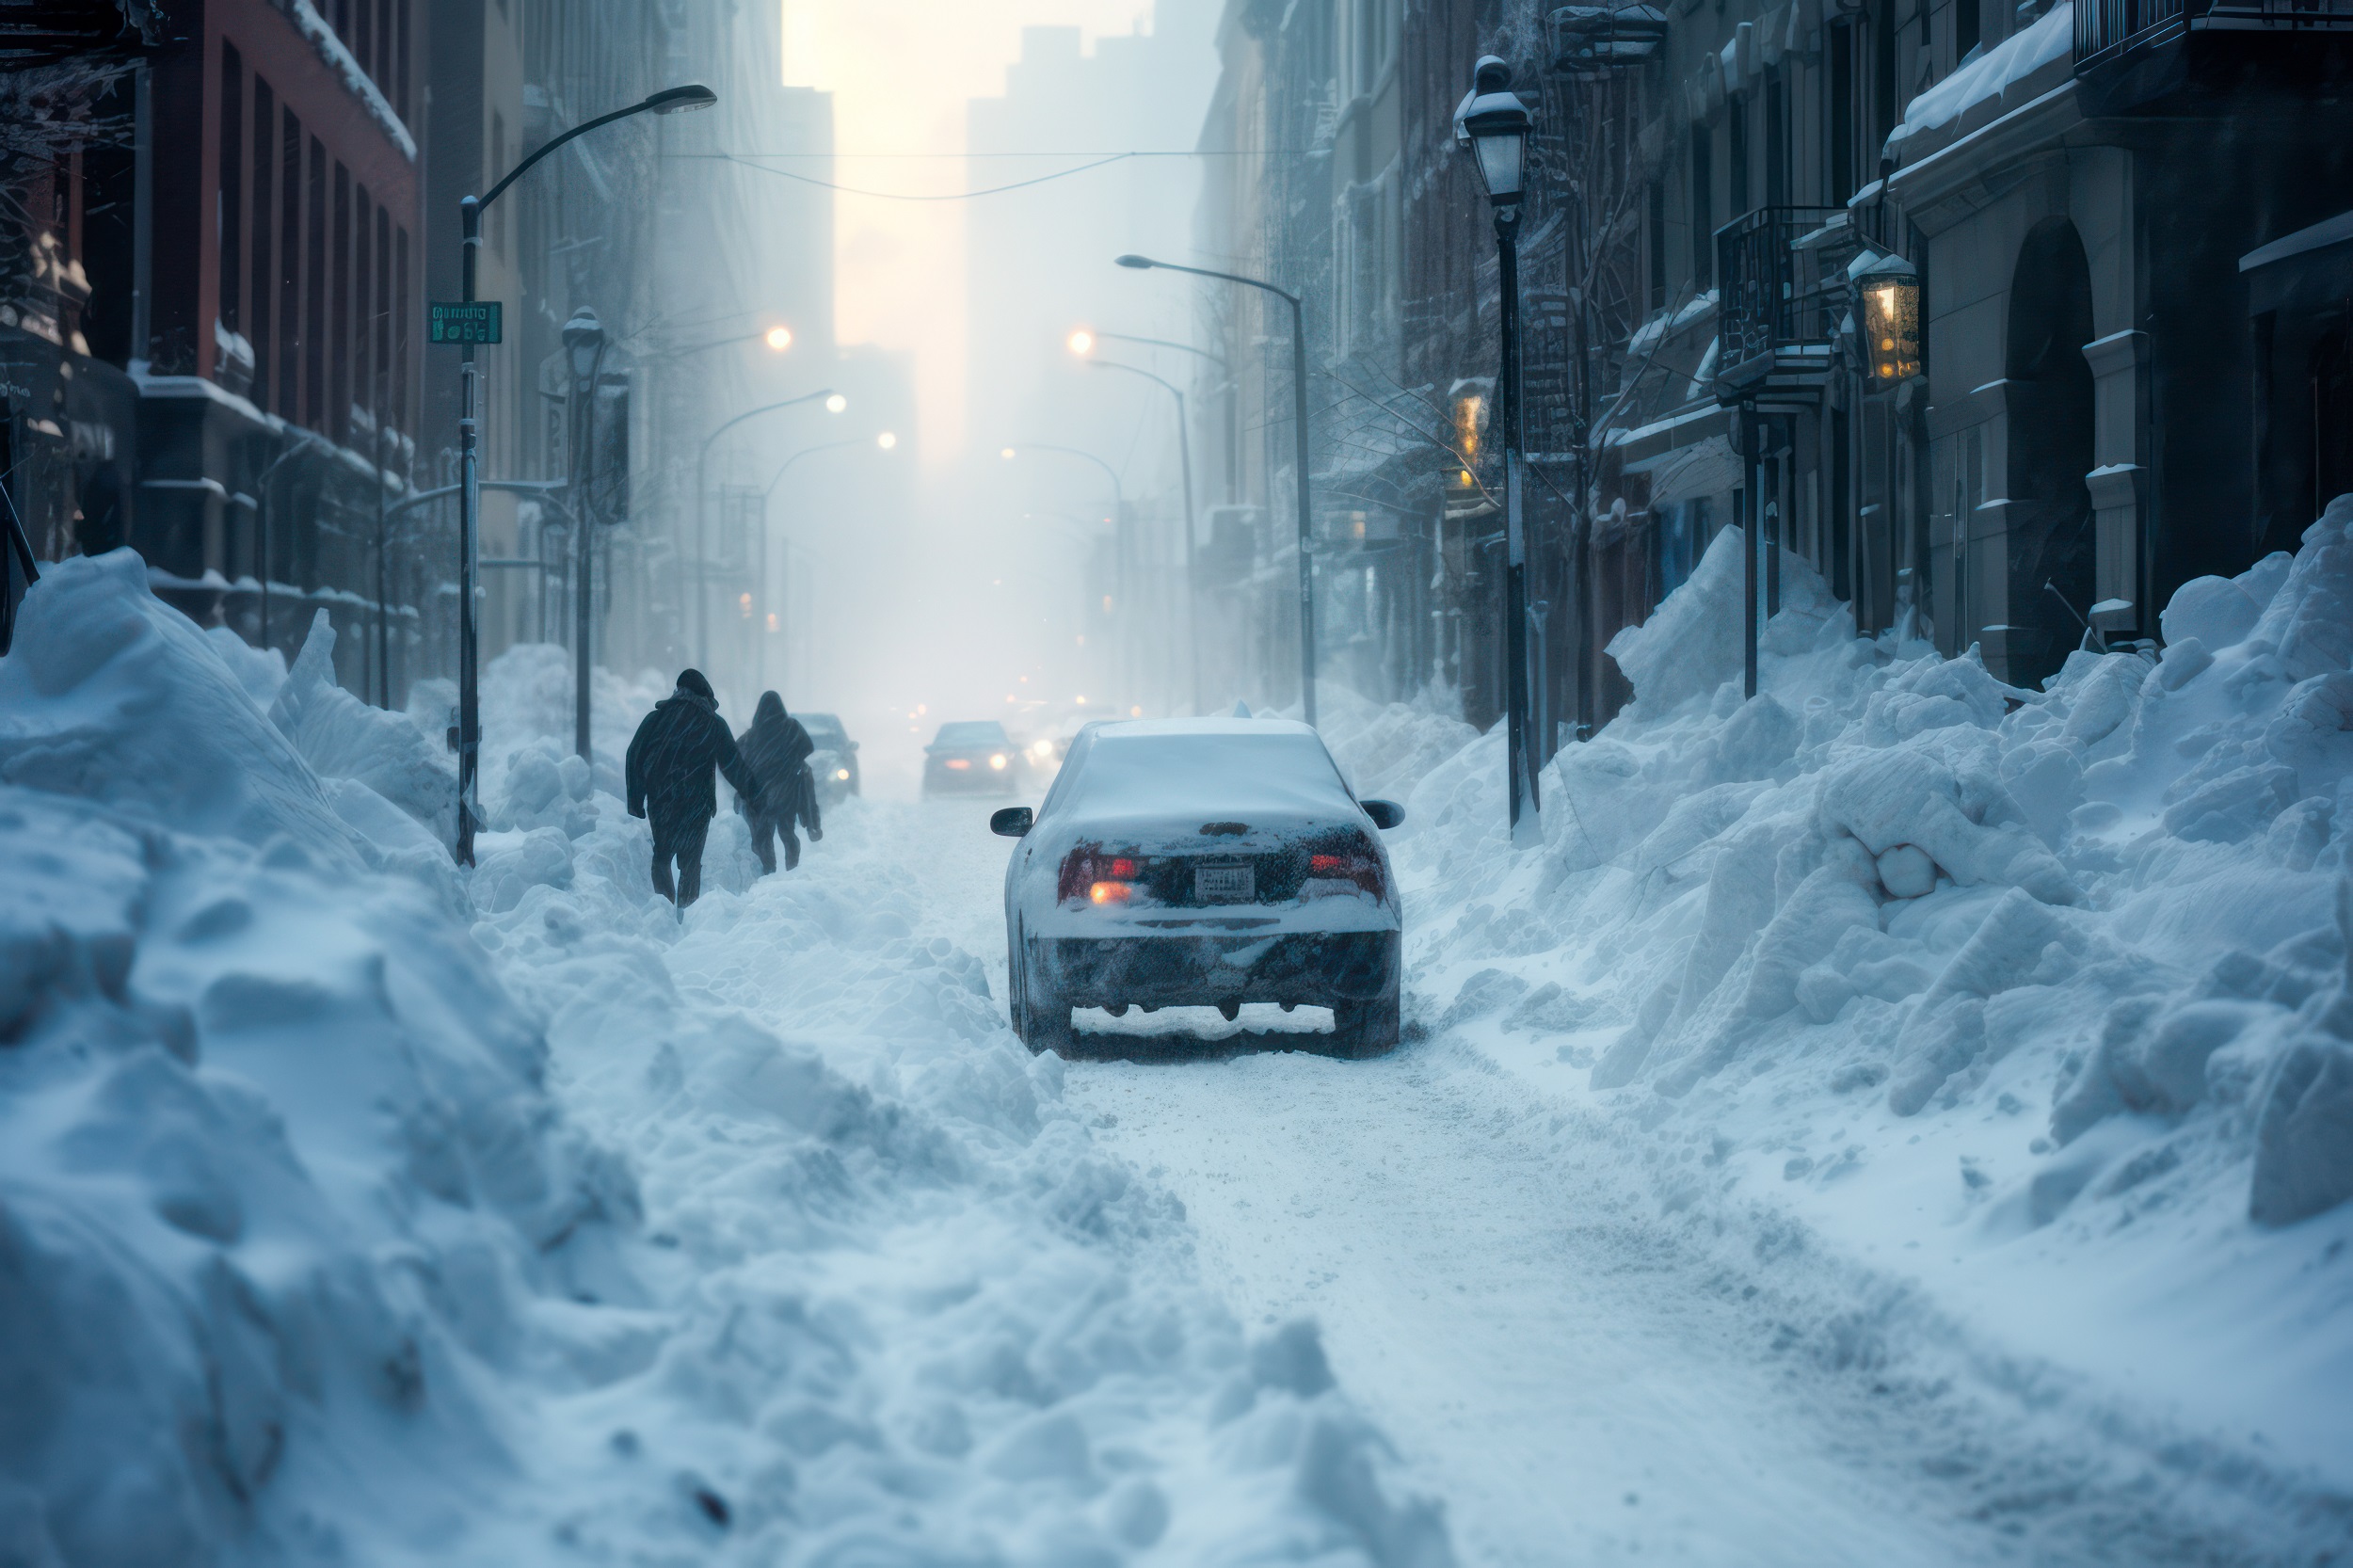 Le blizzard est un phénomène capable de paralyser une ville et de créer de nombreux carambolages. © eyetronic, Adobe Stock